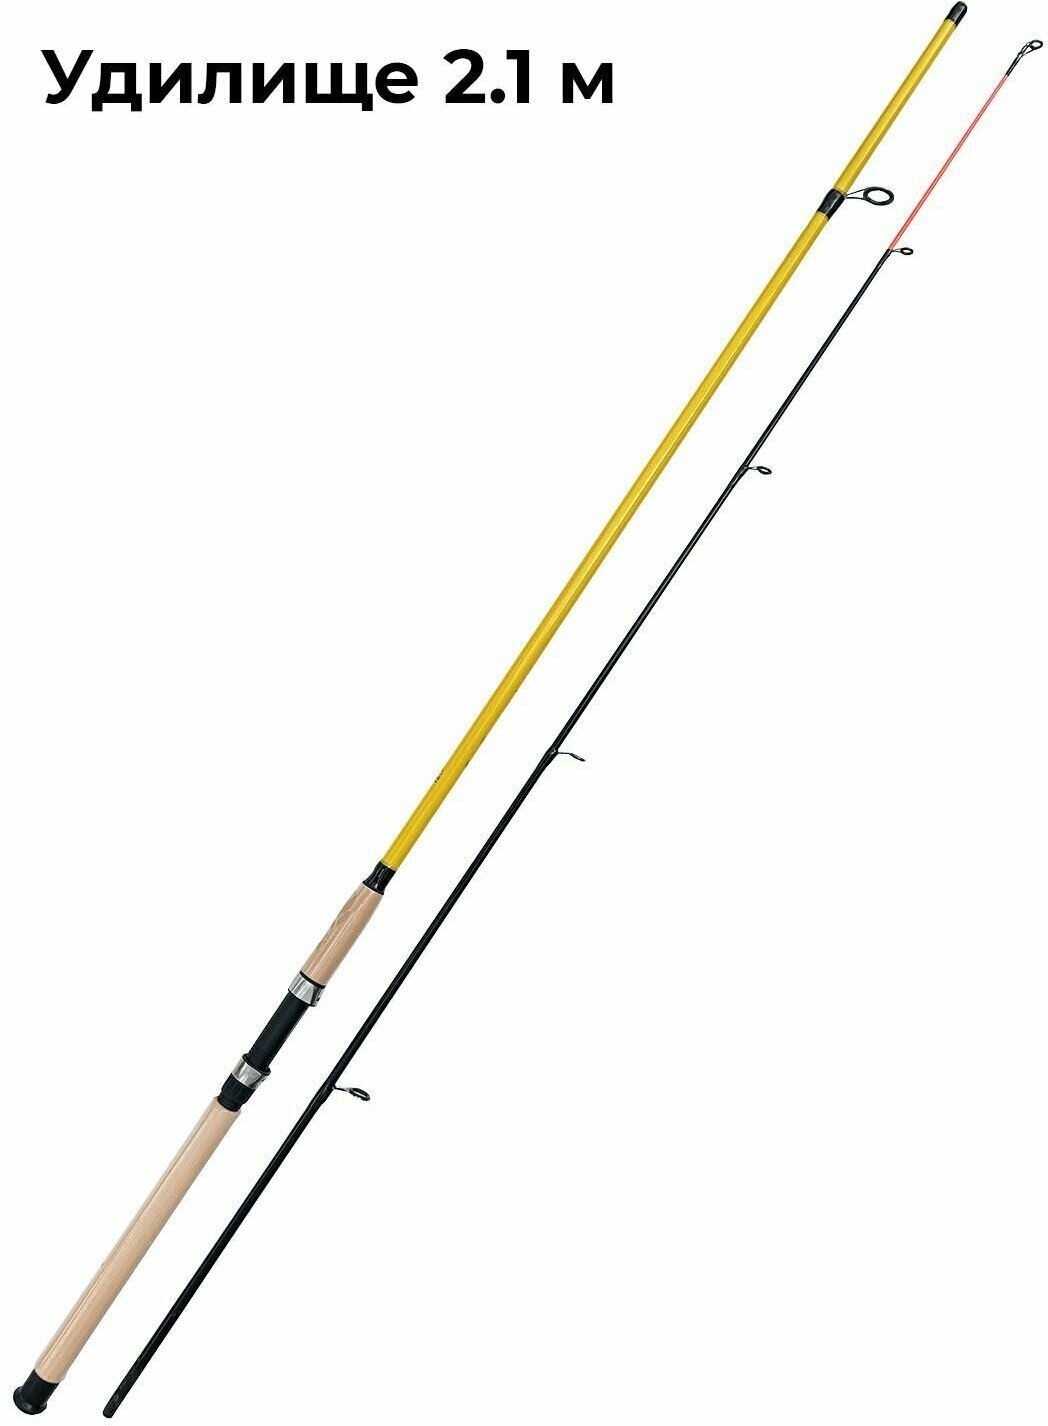 Готовый рыболовный набор для спиннинговой рыбалки / Спиннинг для рыбалки 21 м